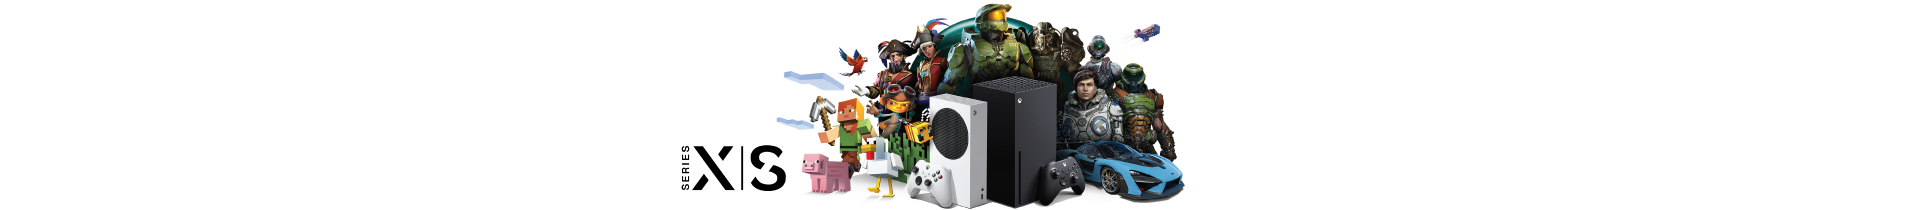 Edições Especiais Xbox Series X|S | PressStart.pt